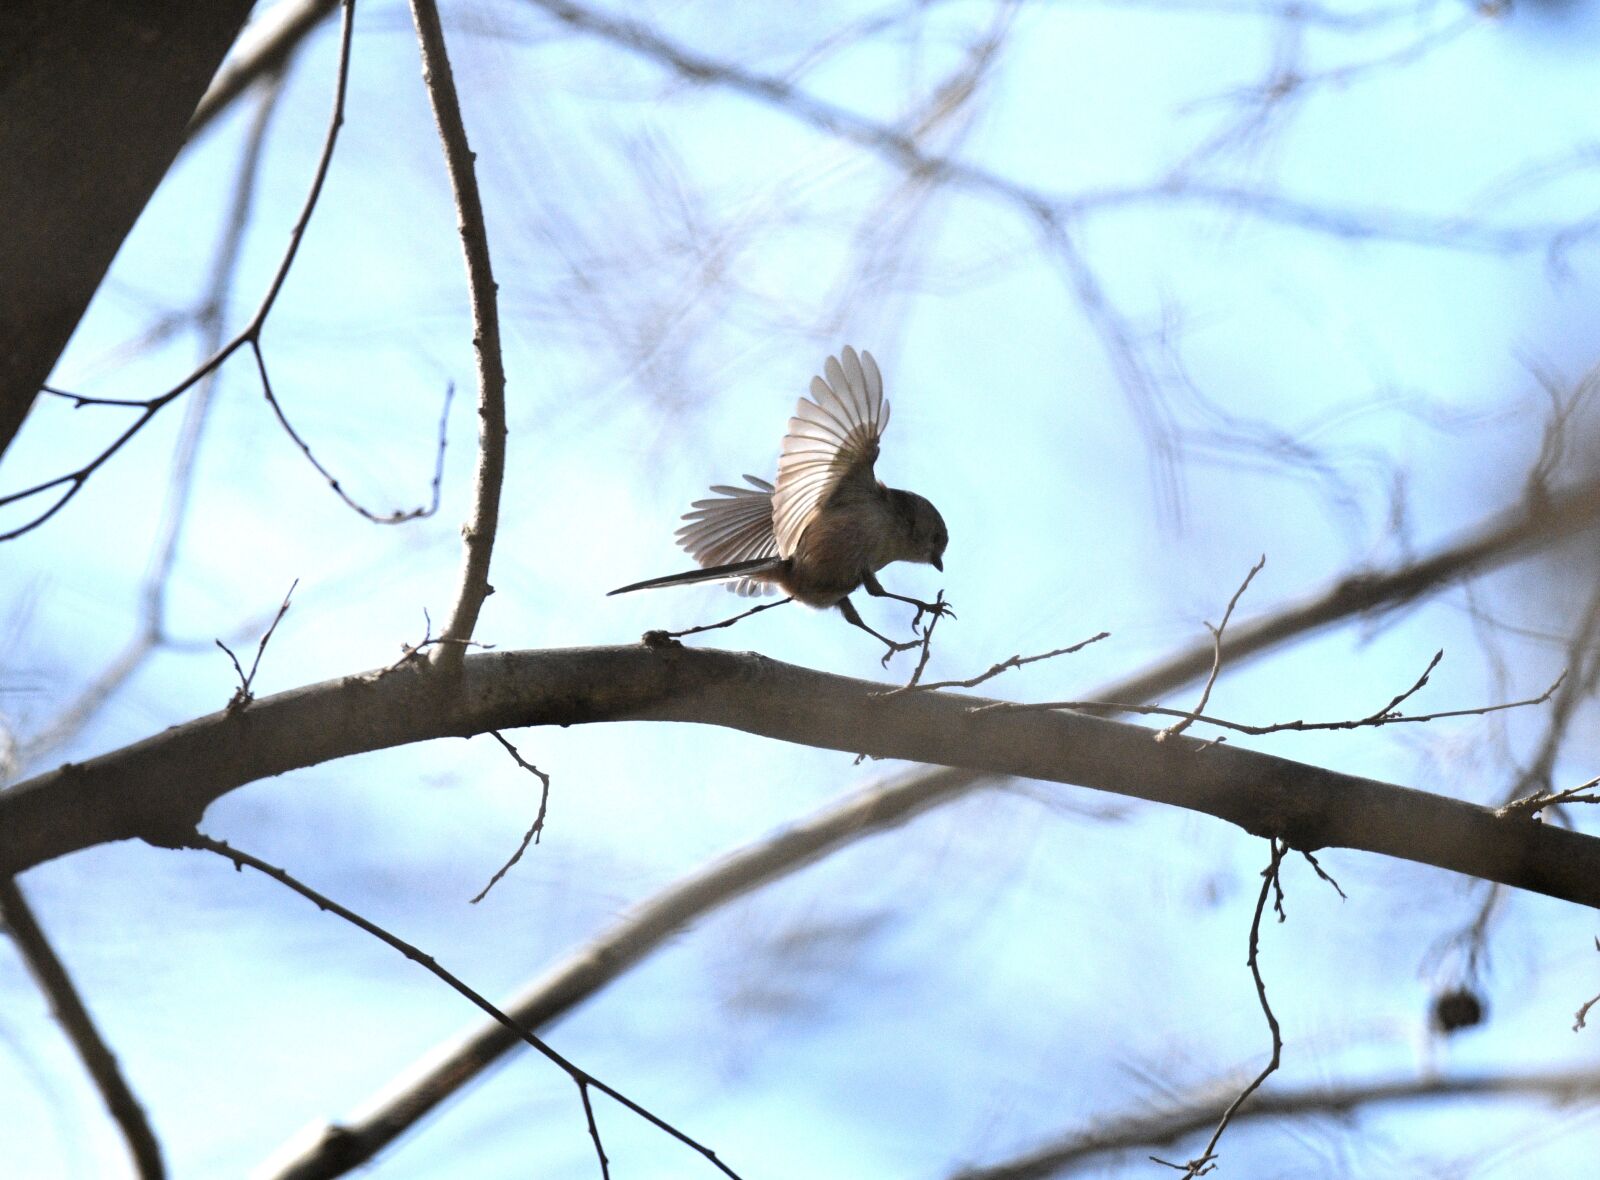 Nikon D850 sample photo. Bird, feathers, plumage photography